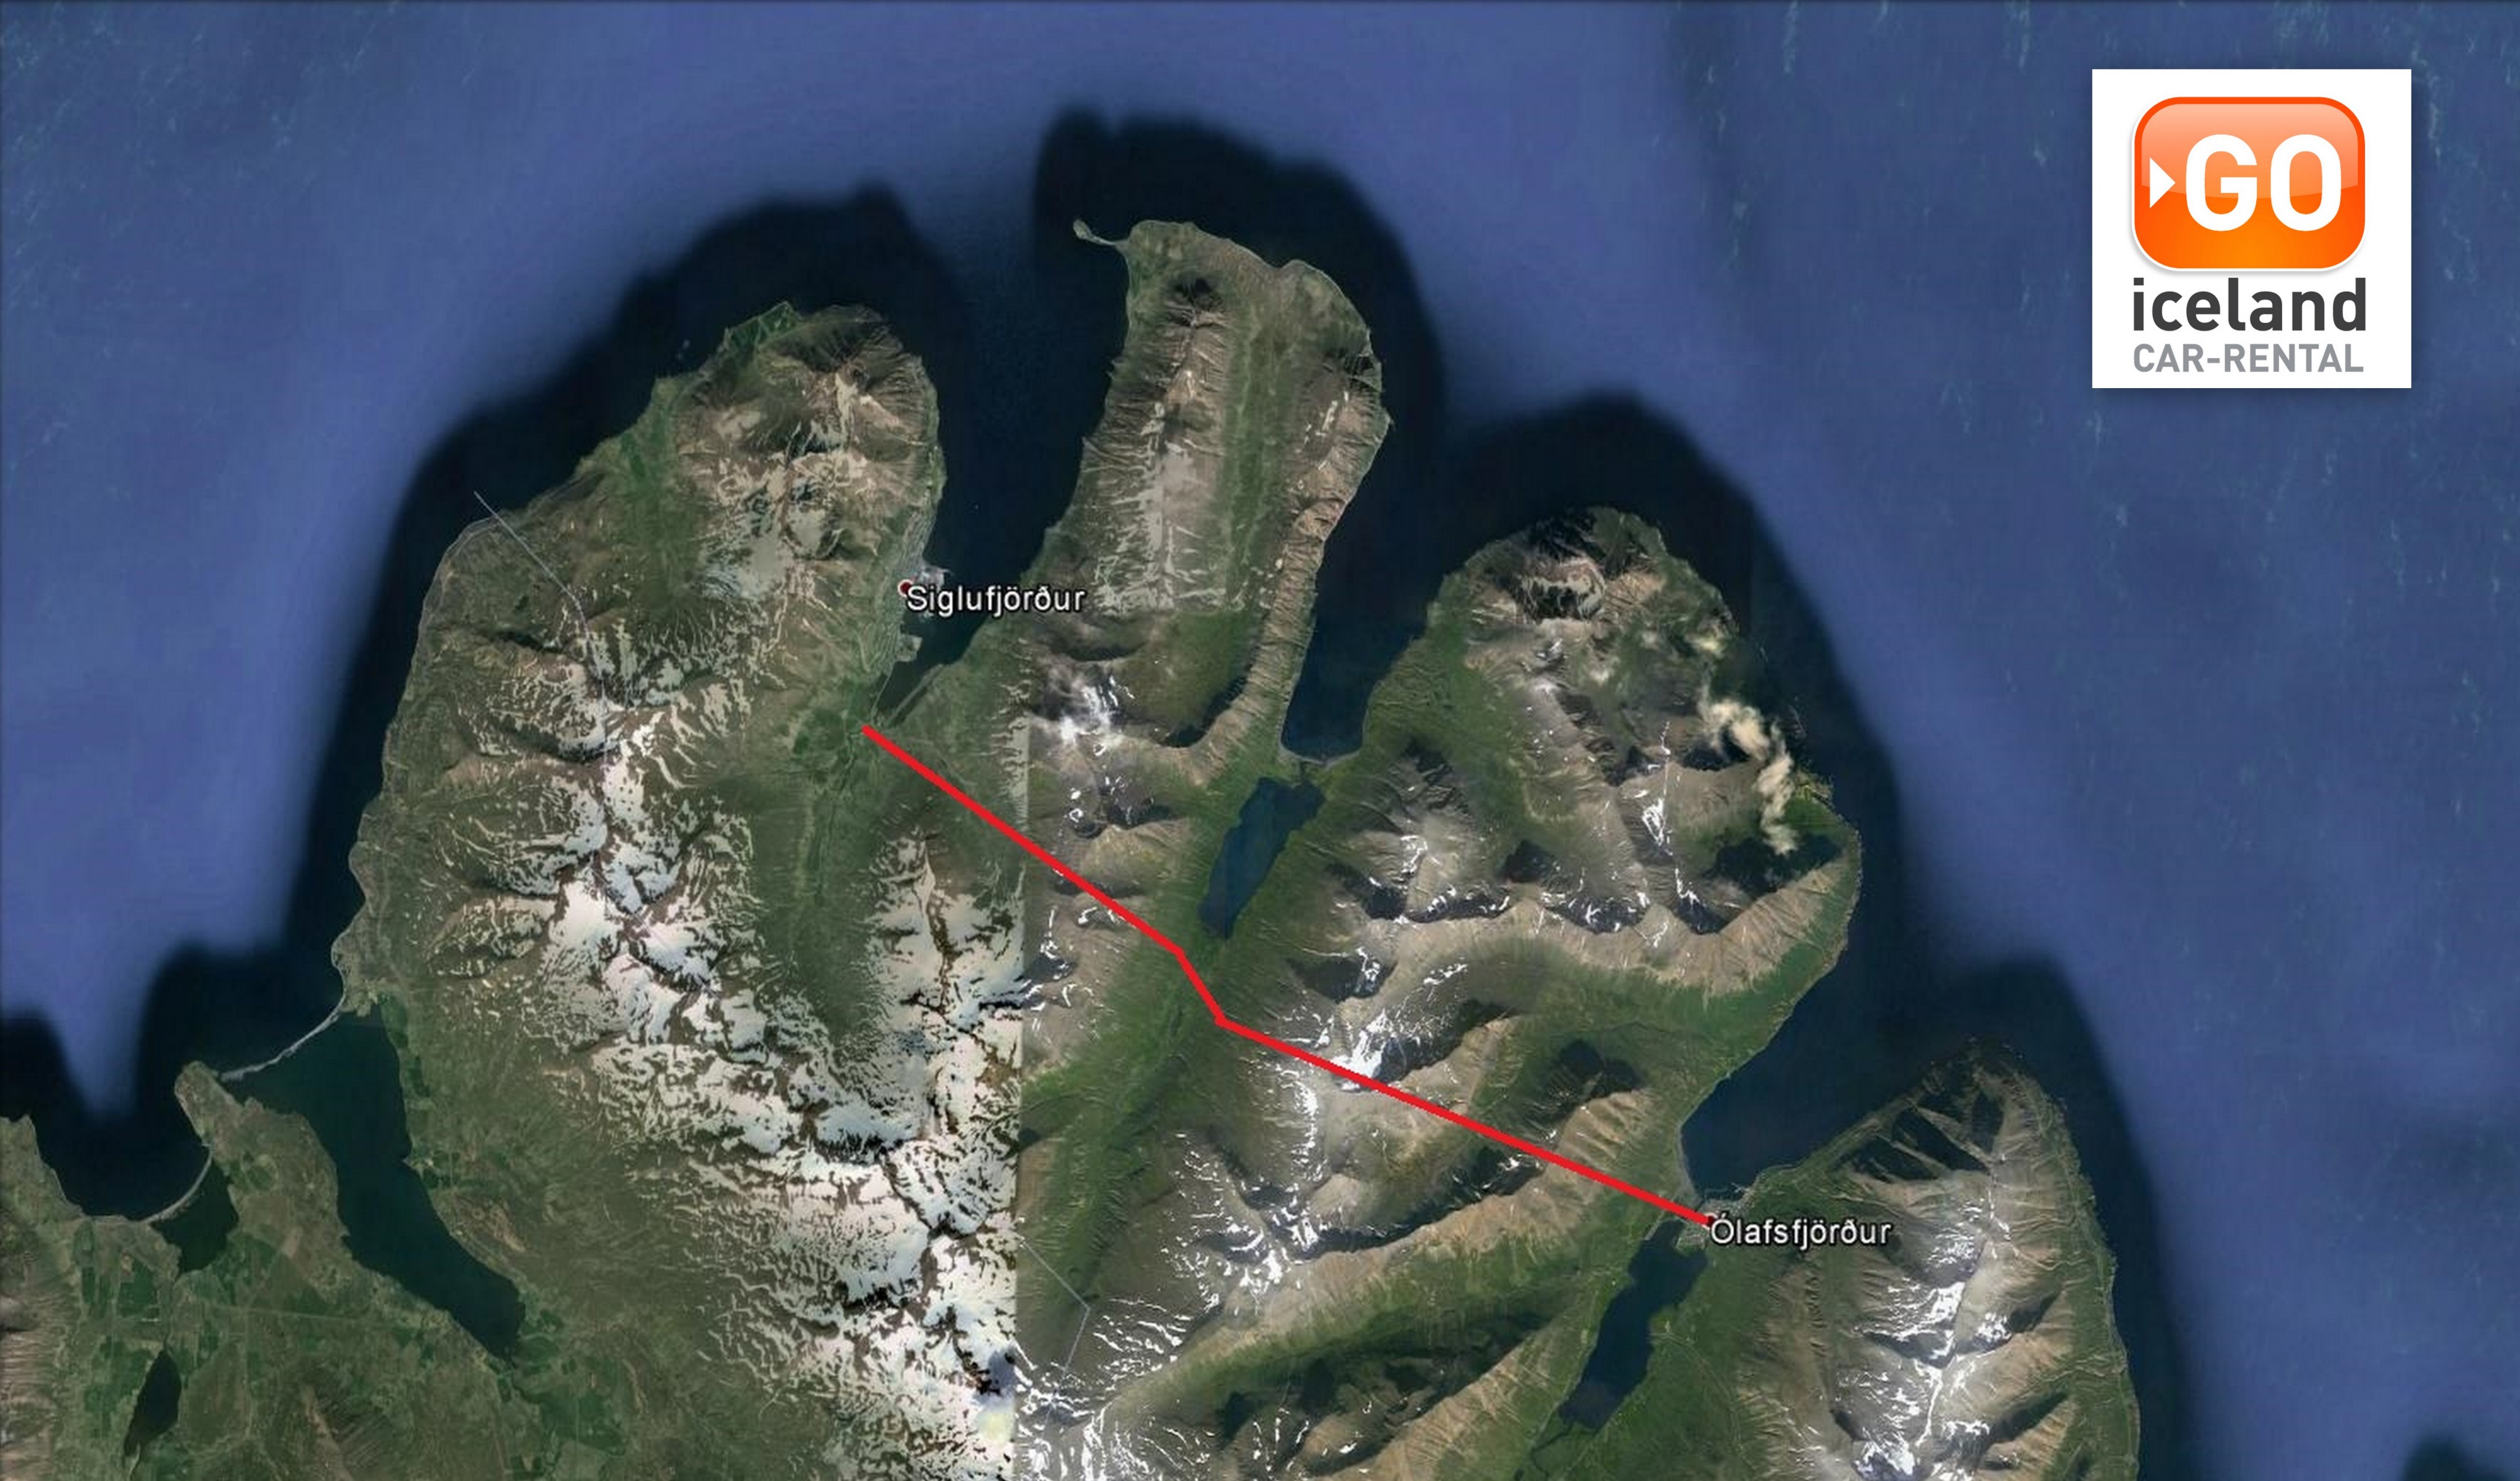 Héðinsfjörður tunnel